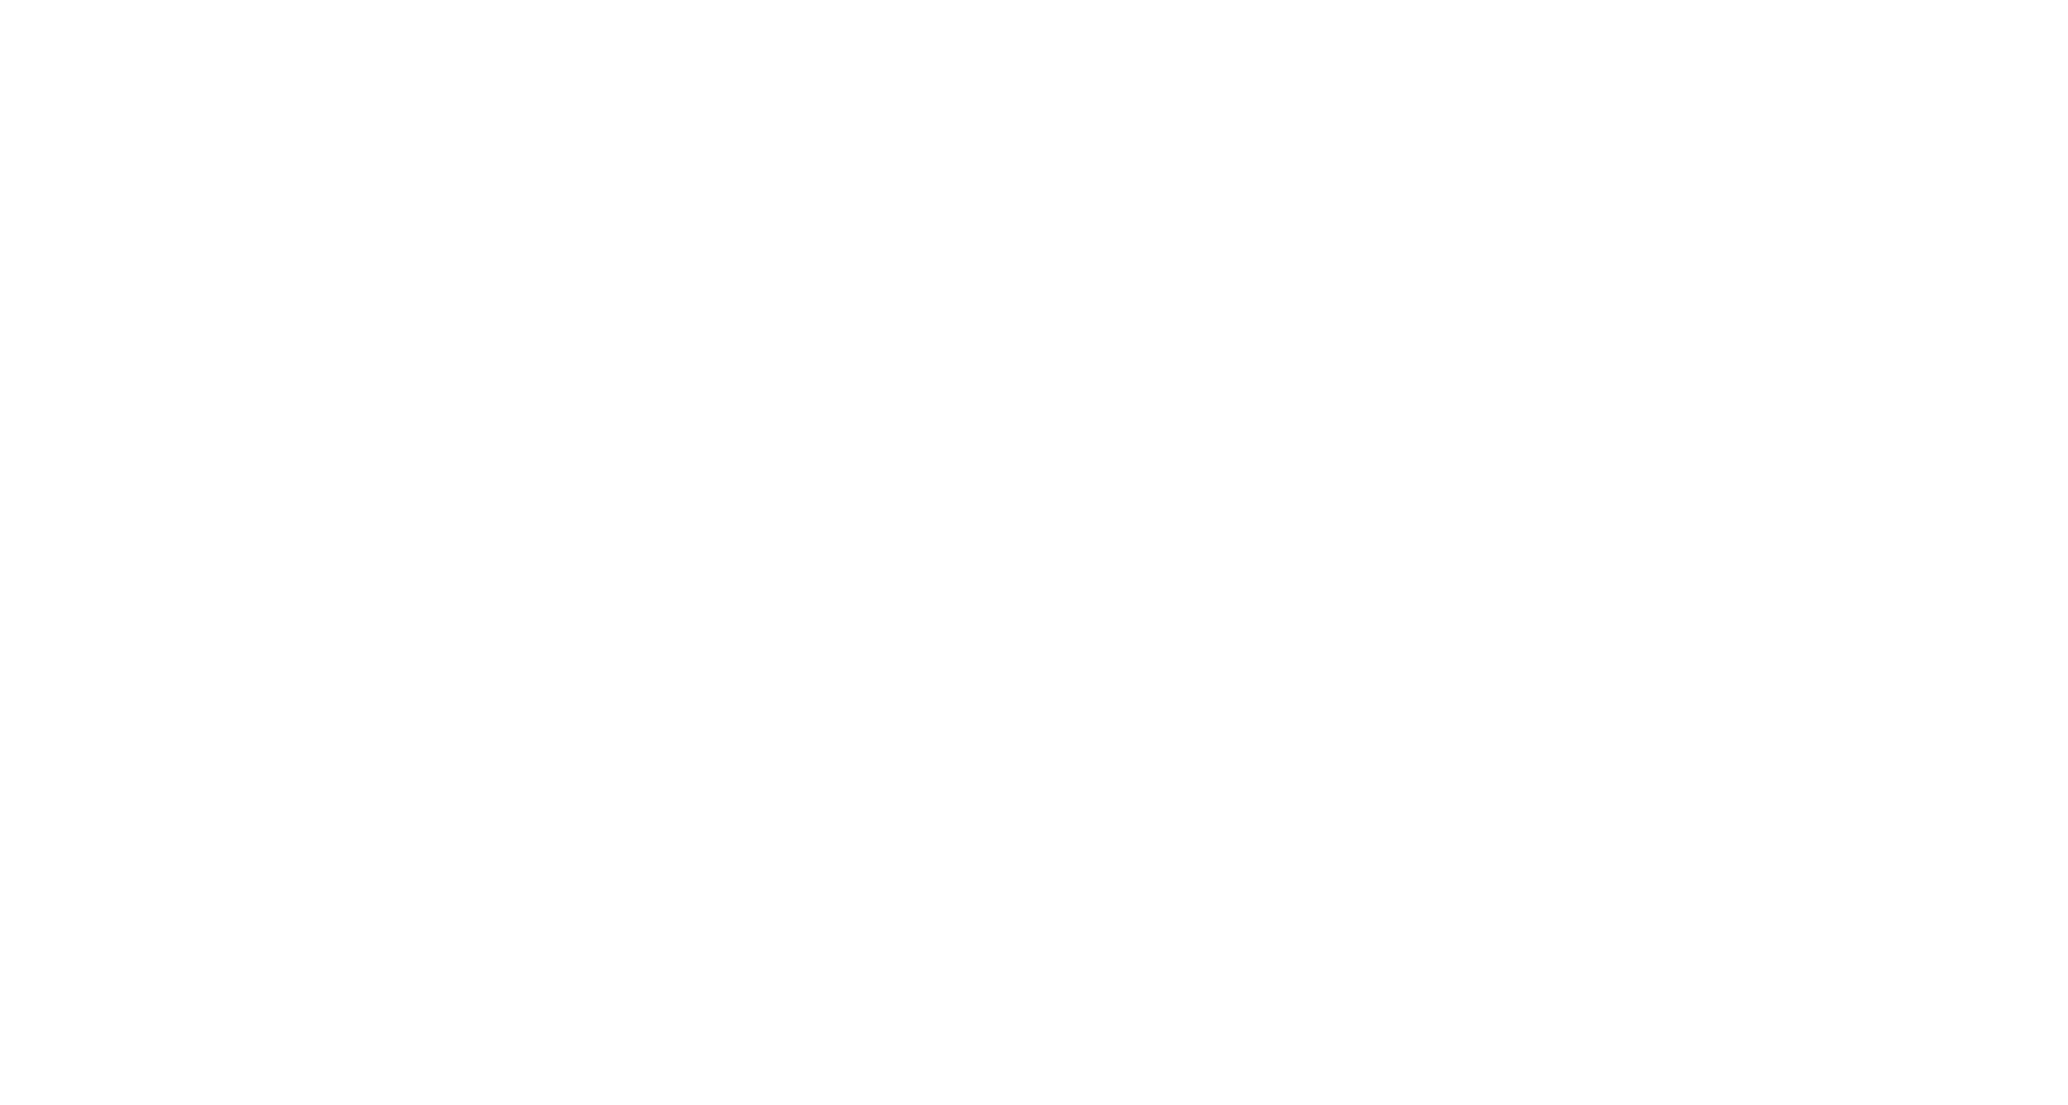 AllU Renews Project